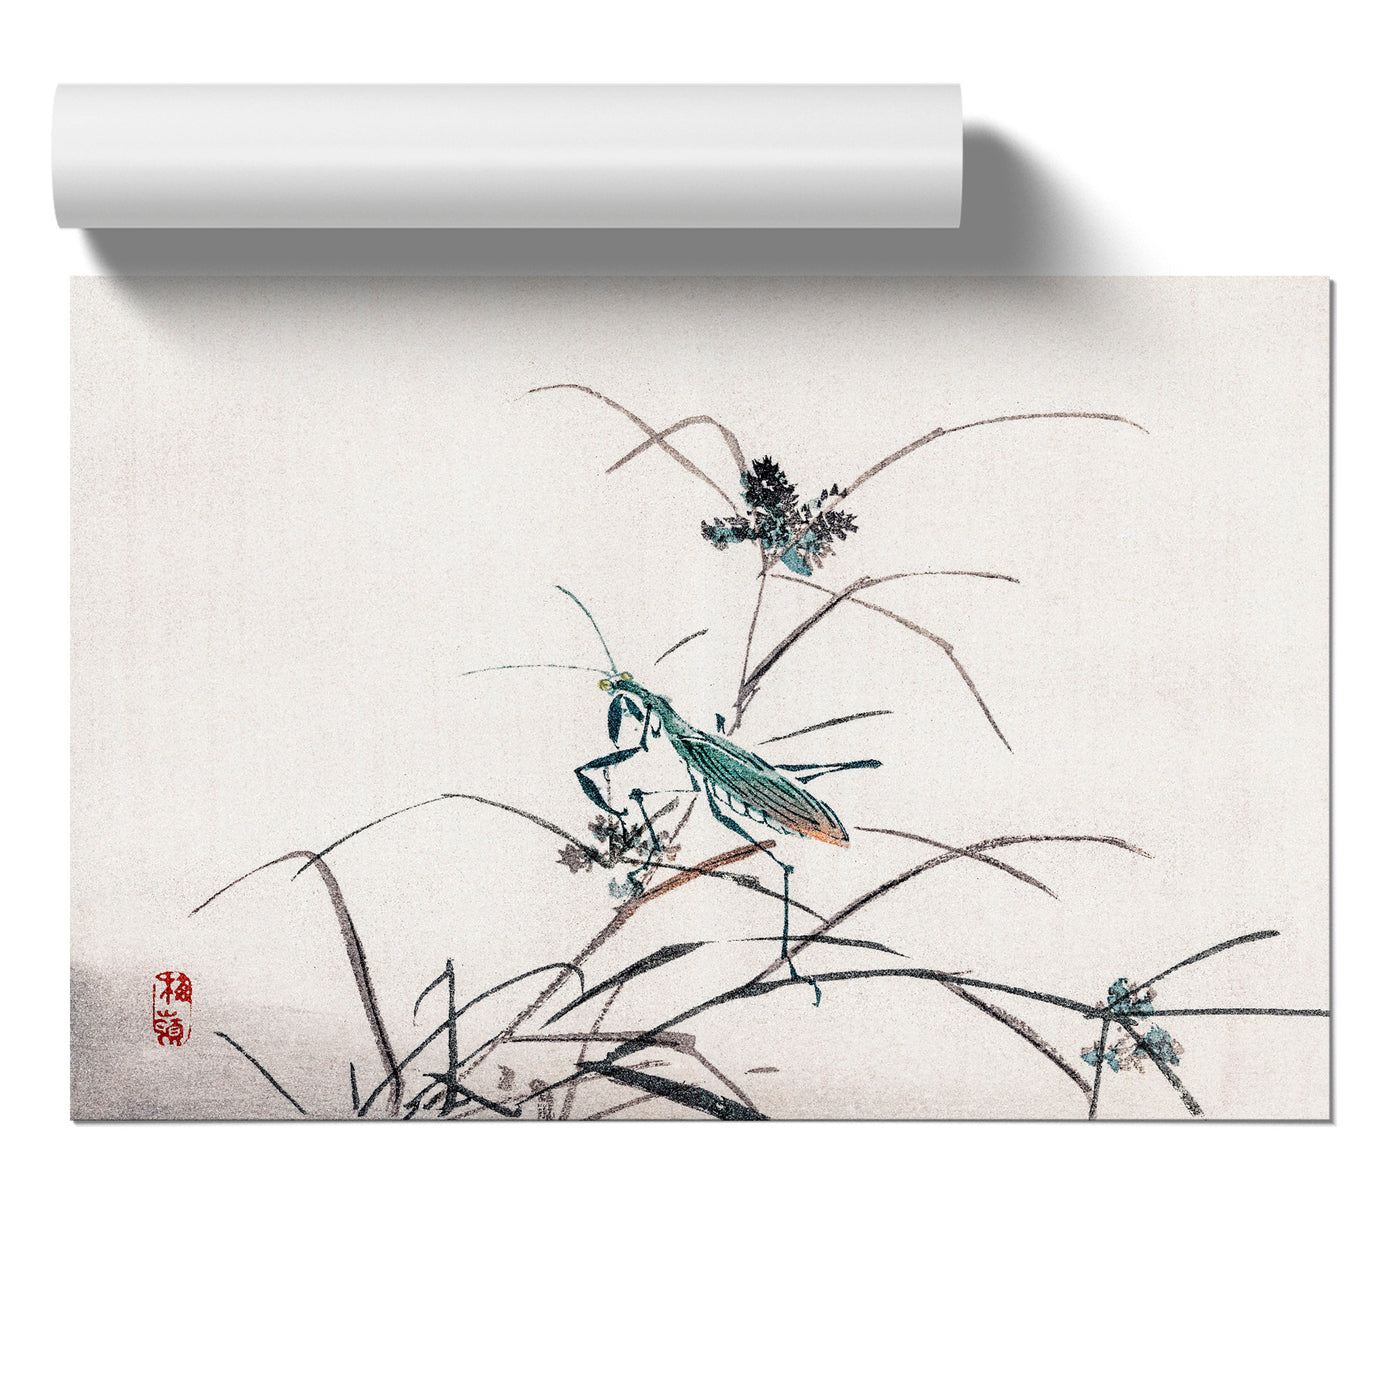 A Grasshopper By Kono Baireir